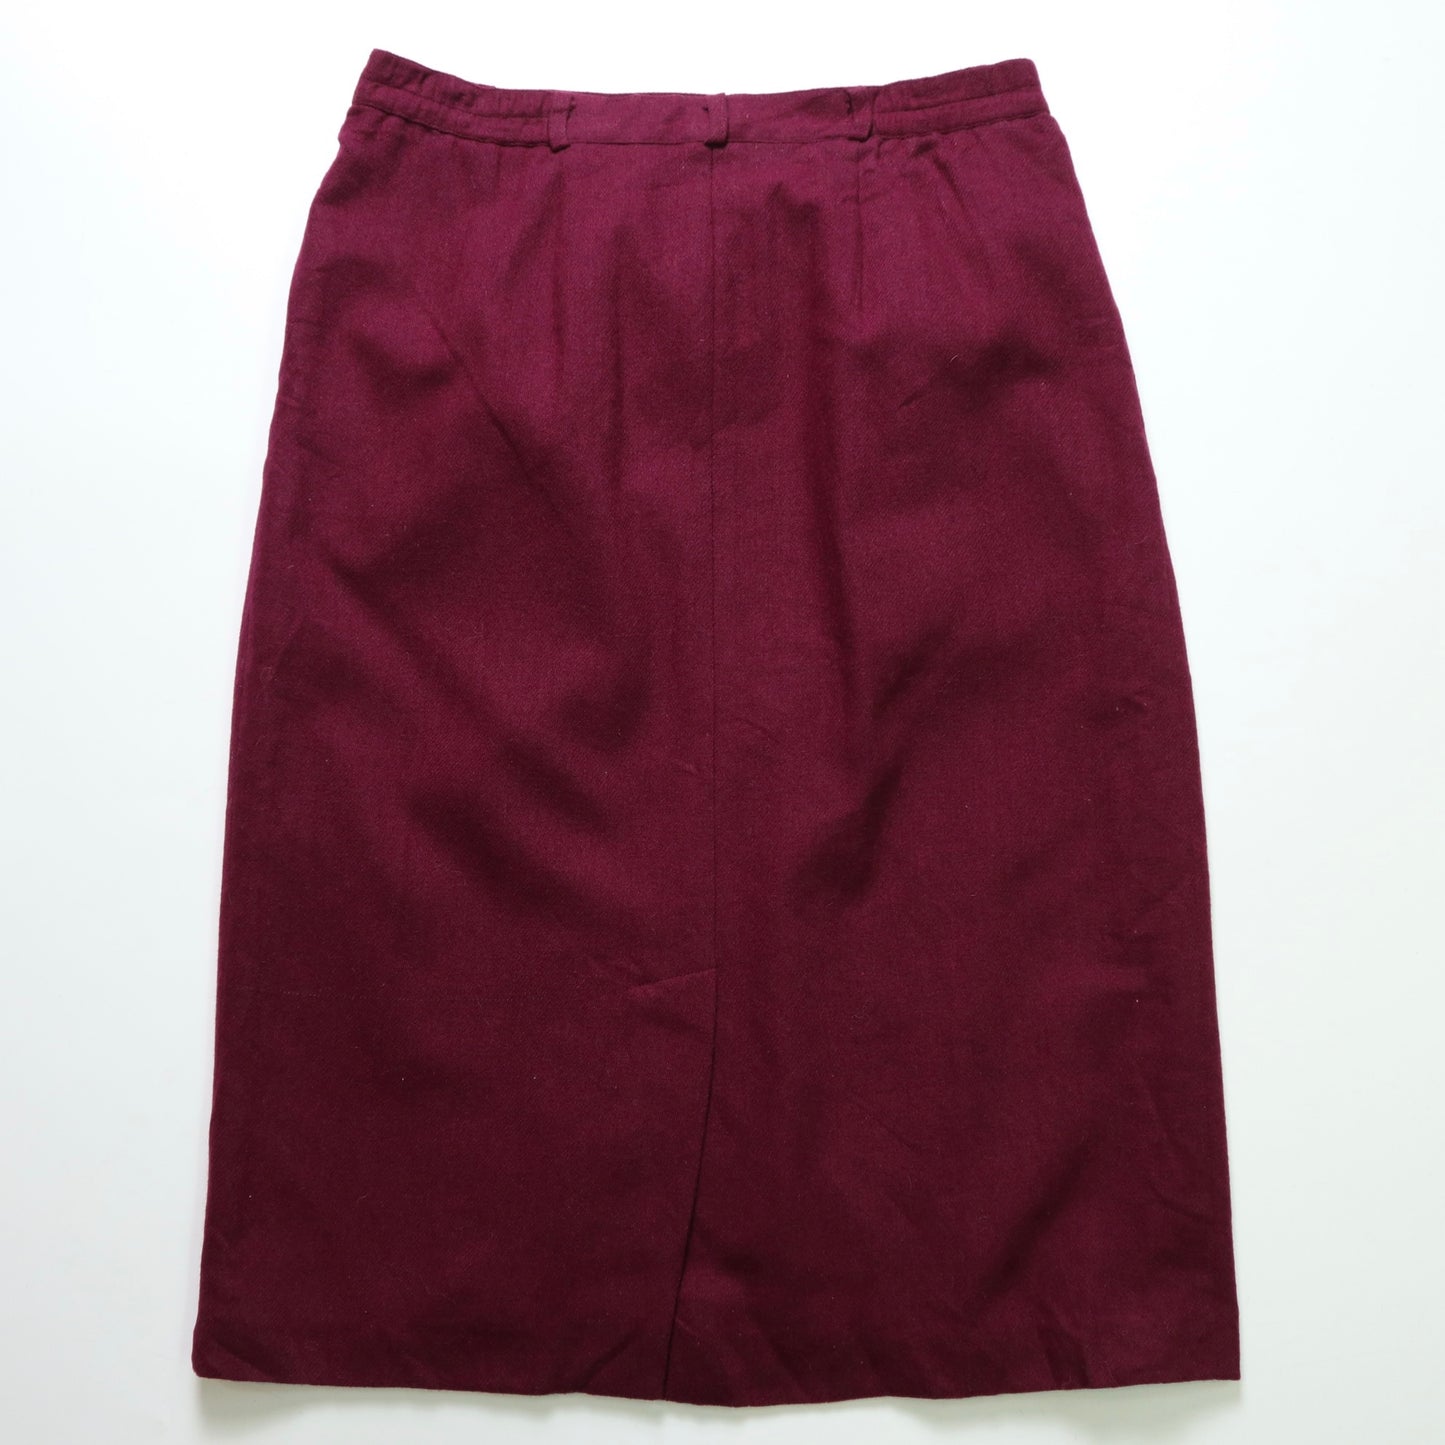 1980s Burgundy Wool Skirt Vintage Wool Skirt 